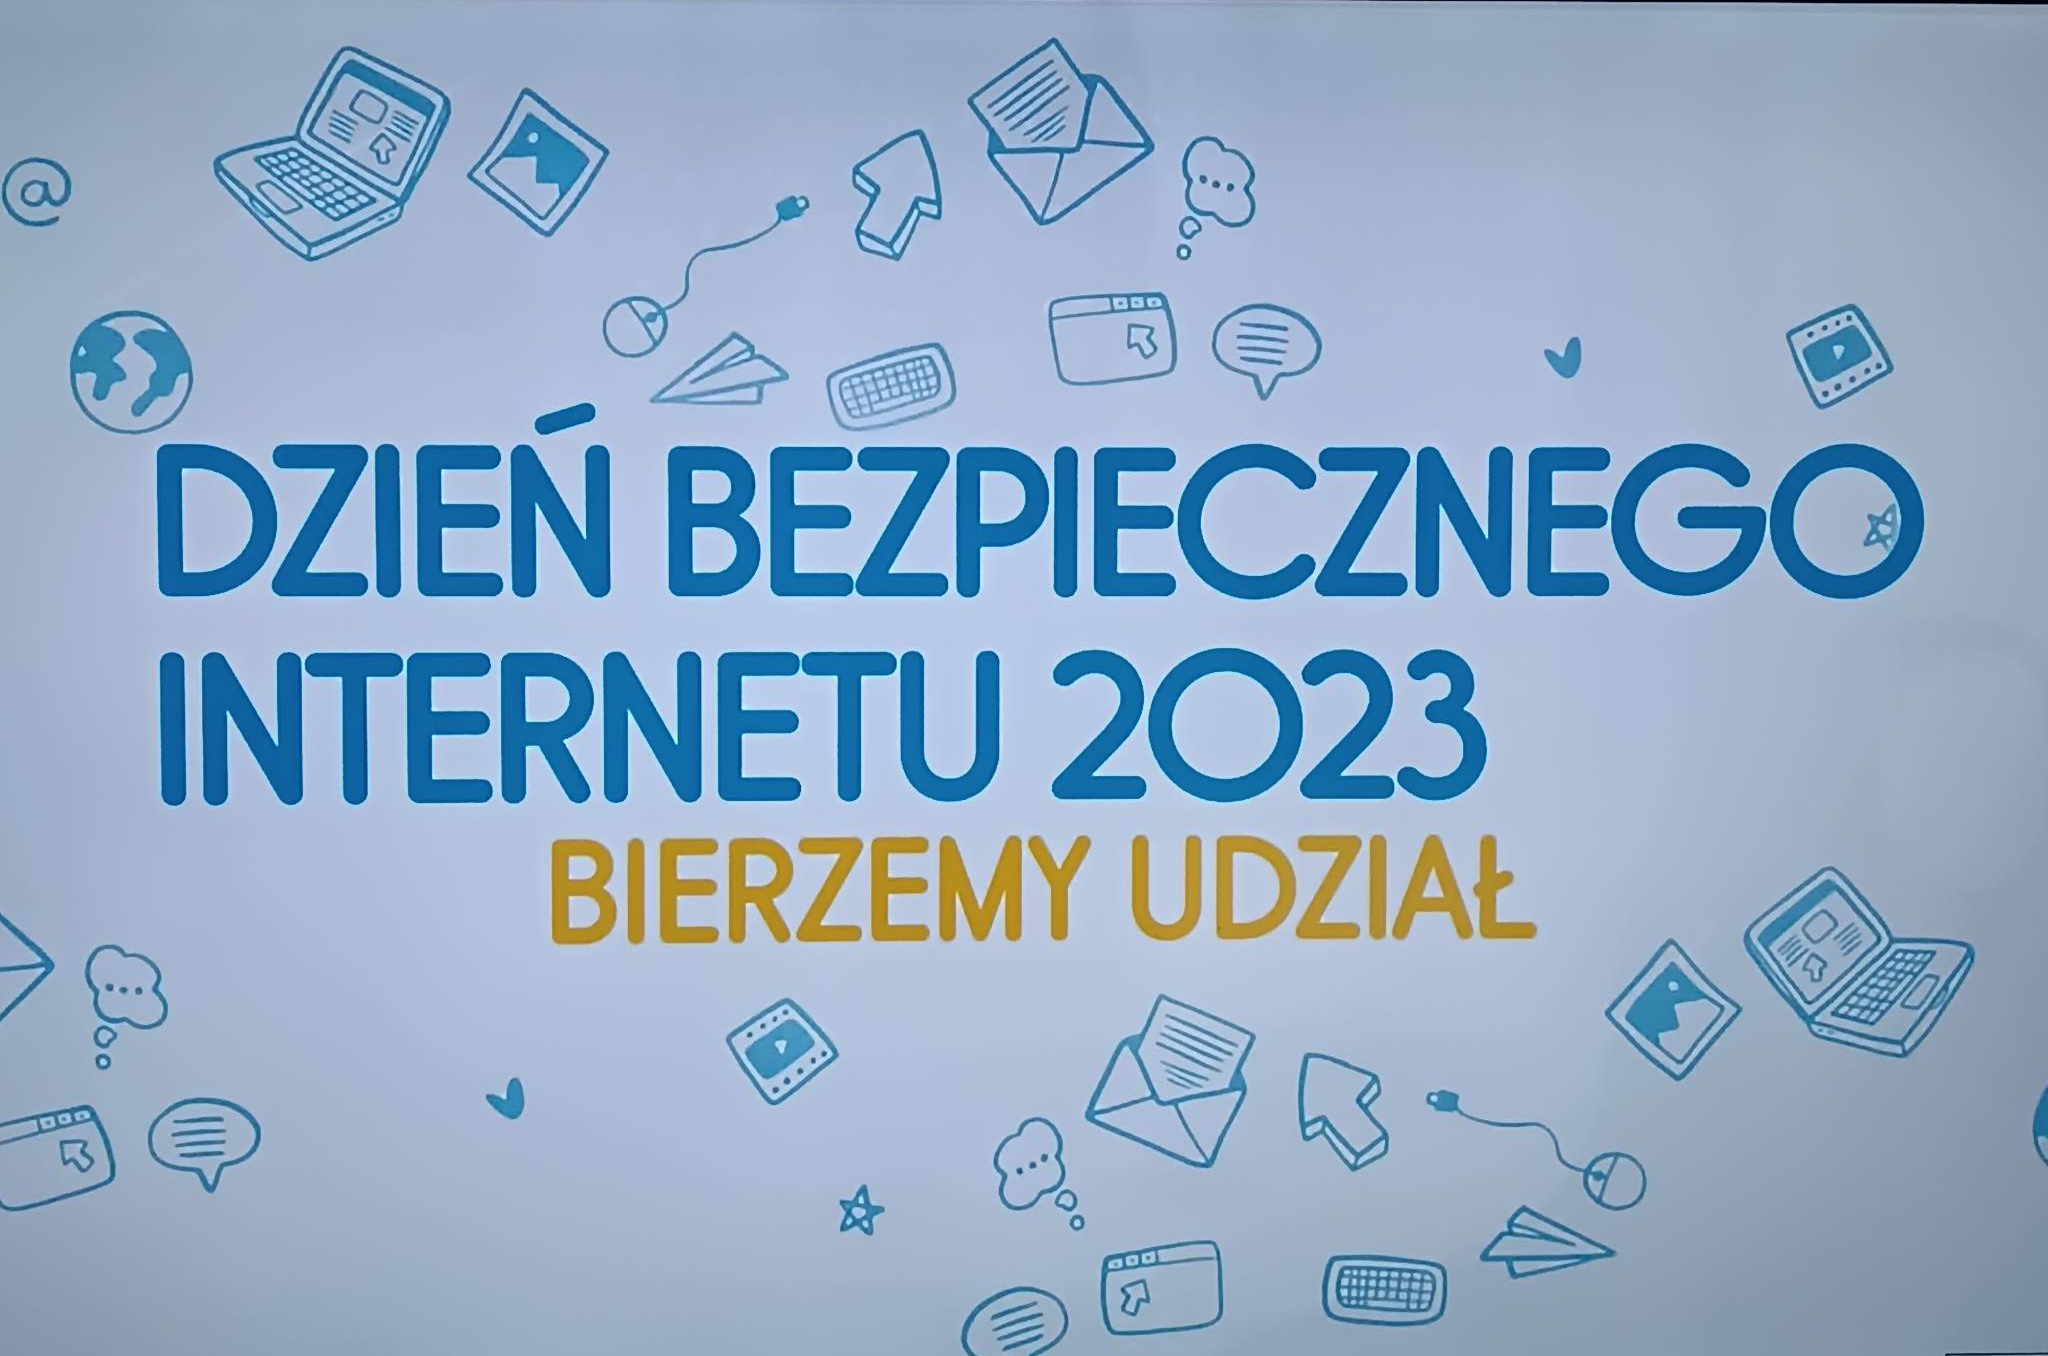 Dzień Bezpiecznego Internetu, Zespół Szkół Politechnicznych w Głogowie